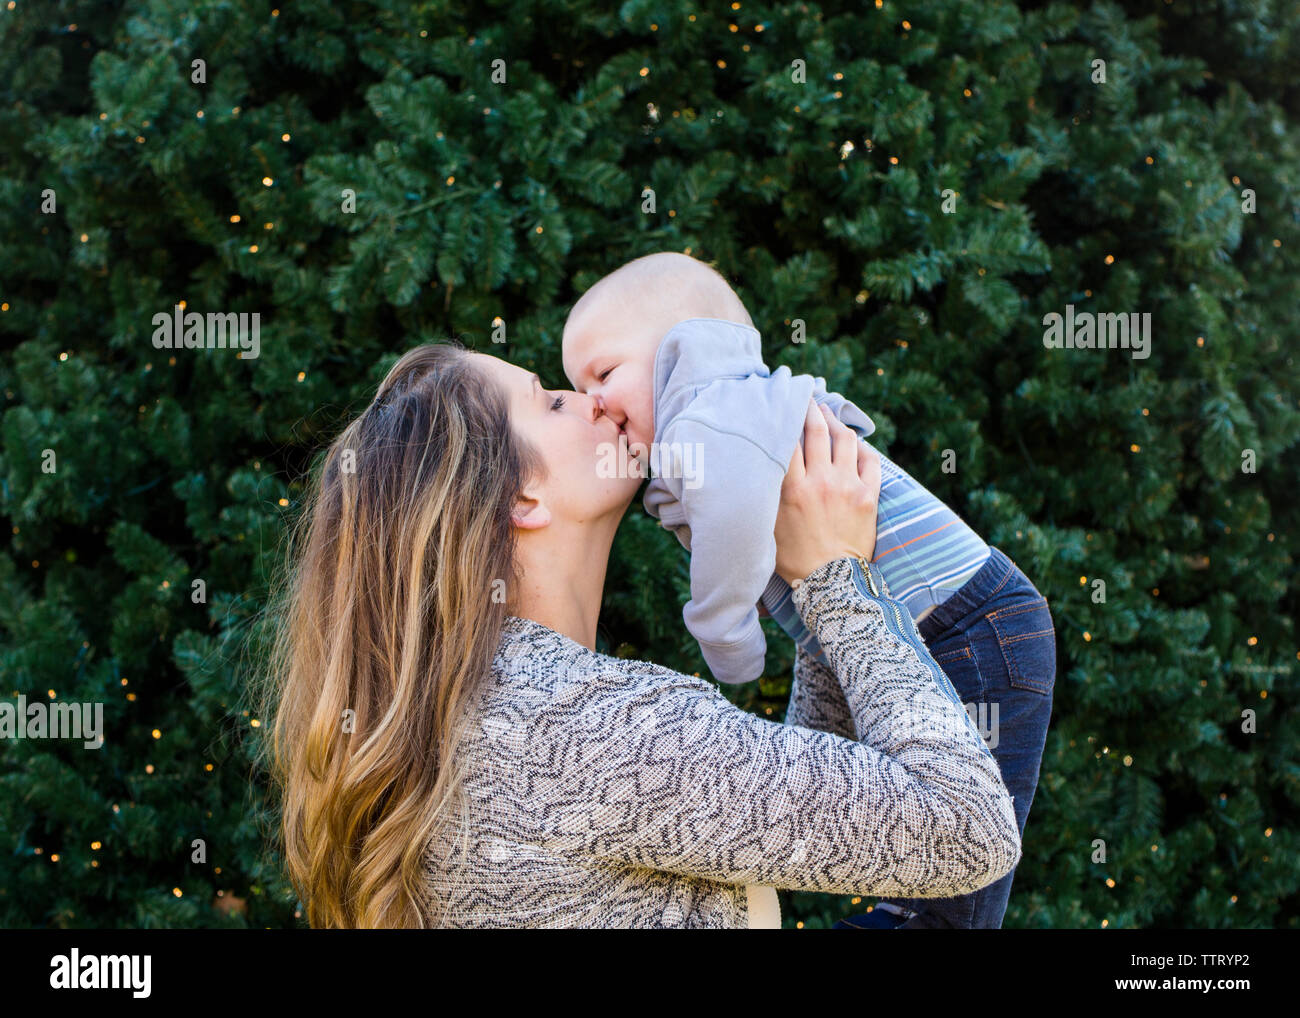 Une mère lève son petit garçon pour un baiser Banque D'Images